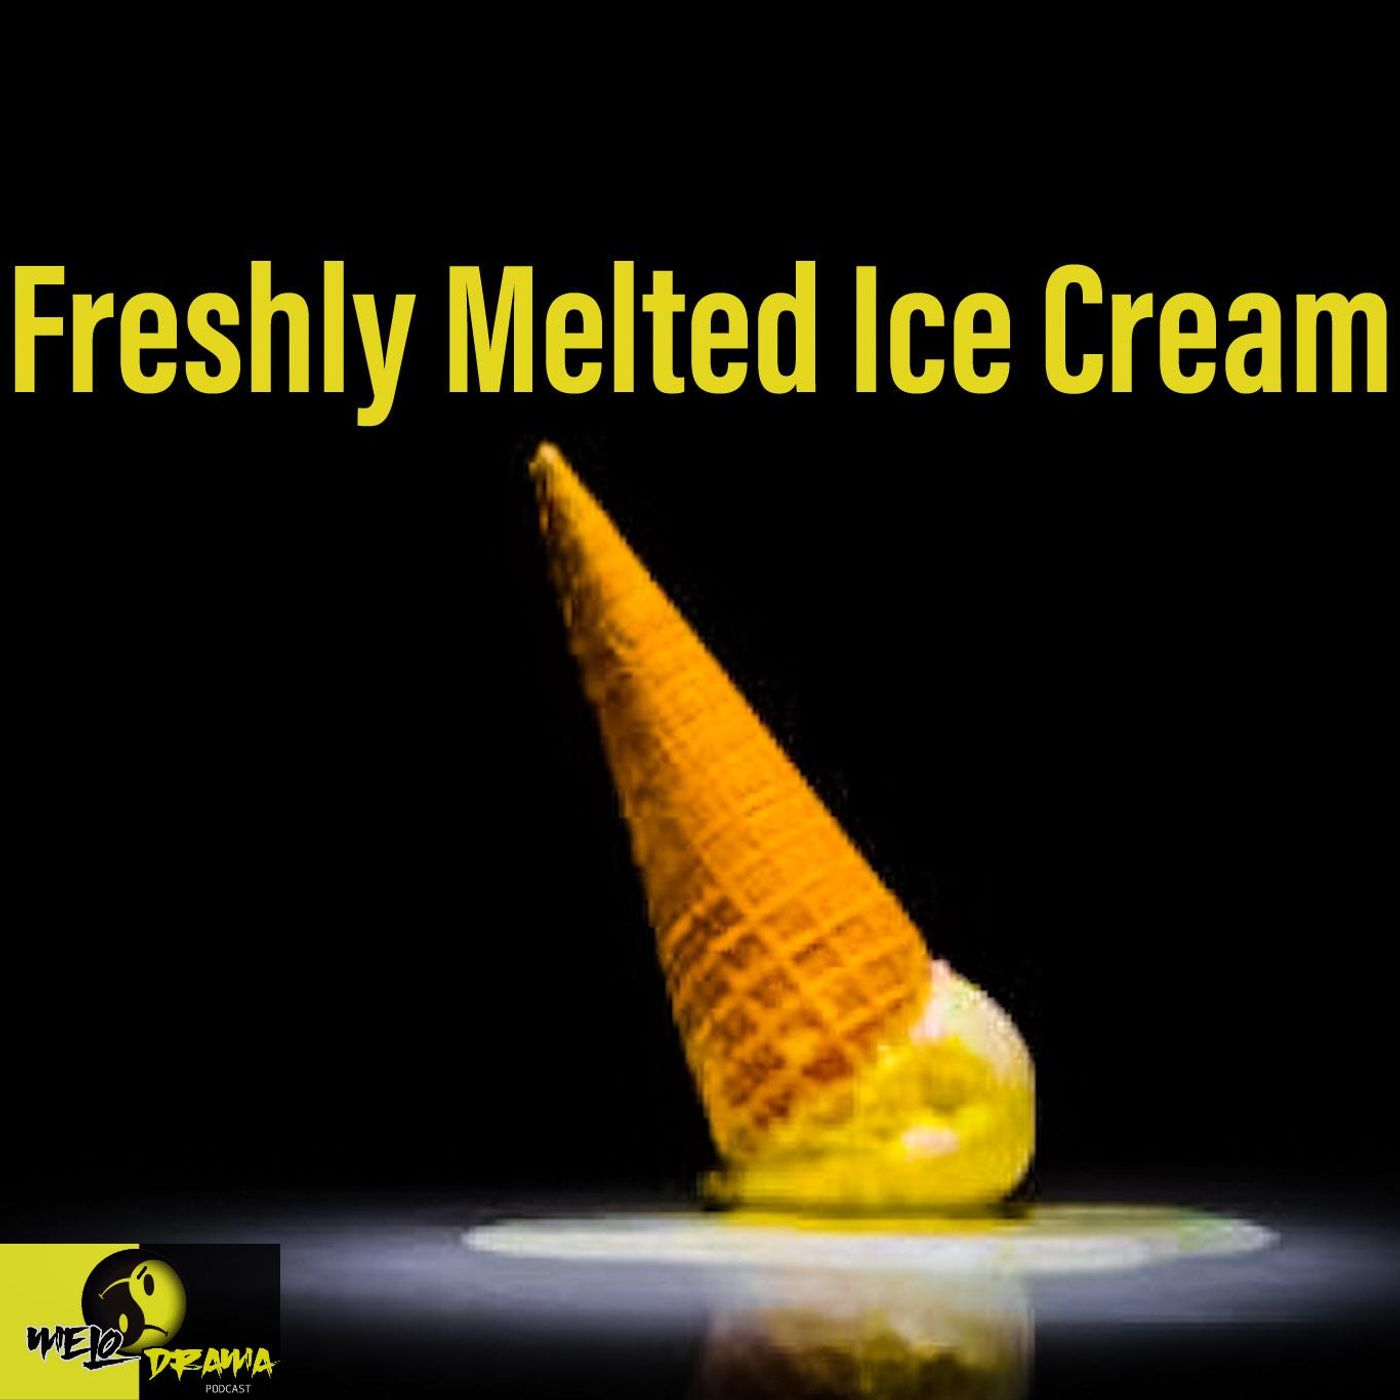 SZN2Episode19: Freshly Melted Ice Cream